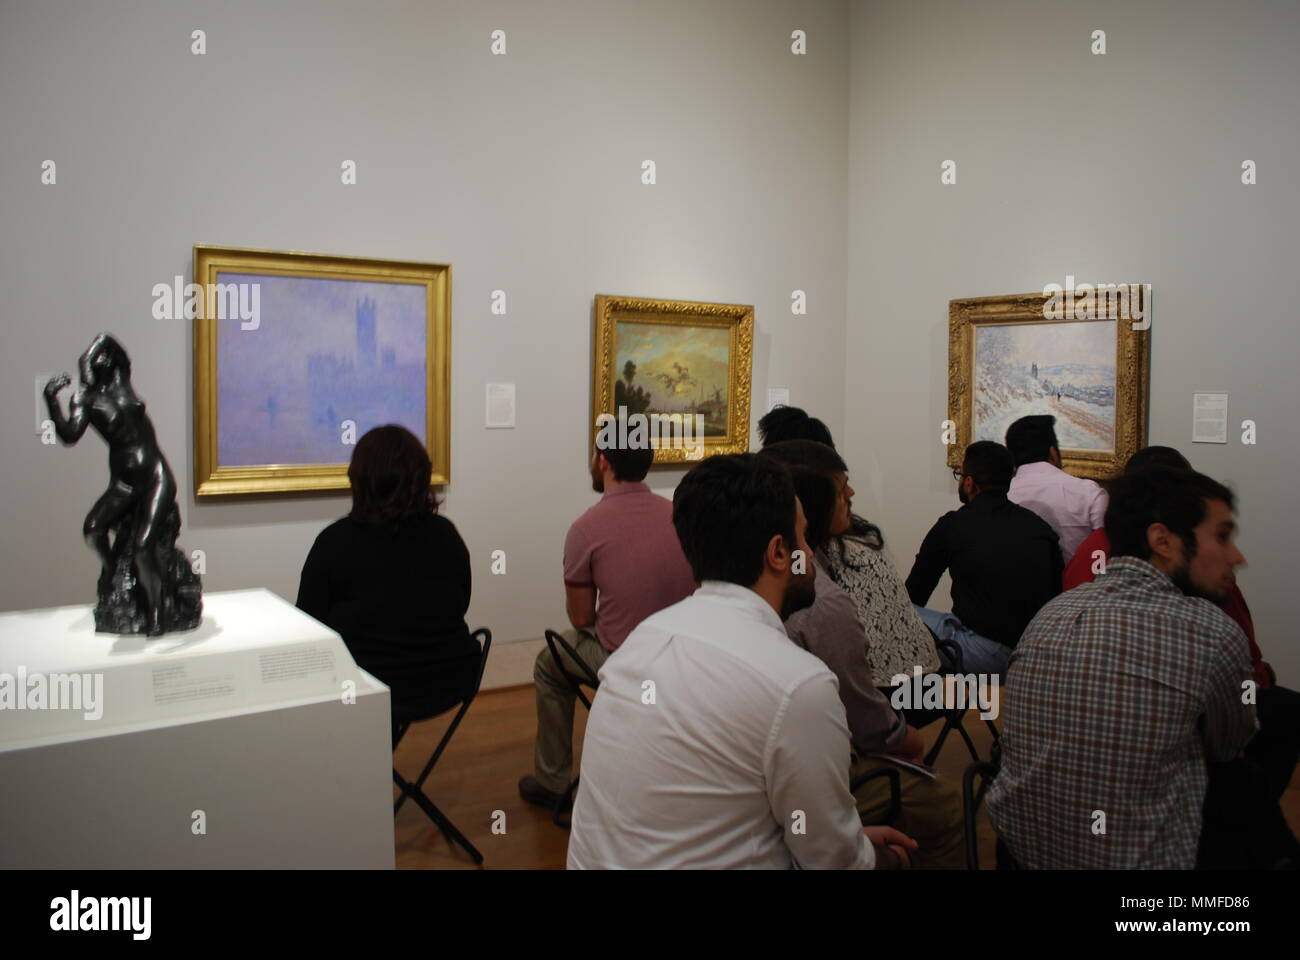 Grupo de adultos en el museo de arte. Gente sentada mirando en una famosa pintura artística. Grupo multirracial de la población de estudio. La curiosidad, el concepto de la educación. Foto de stock